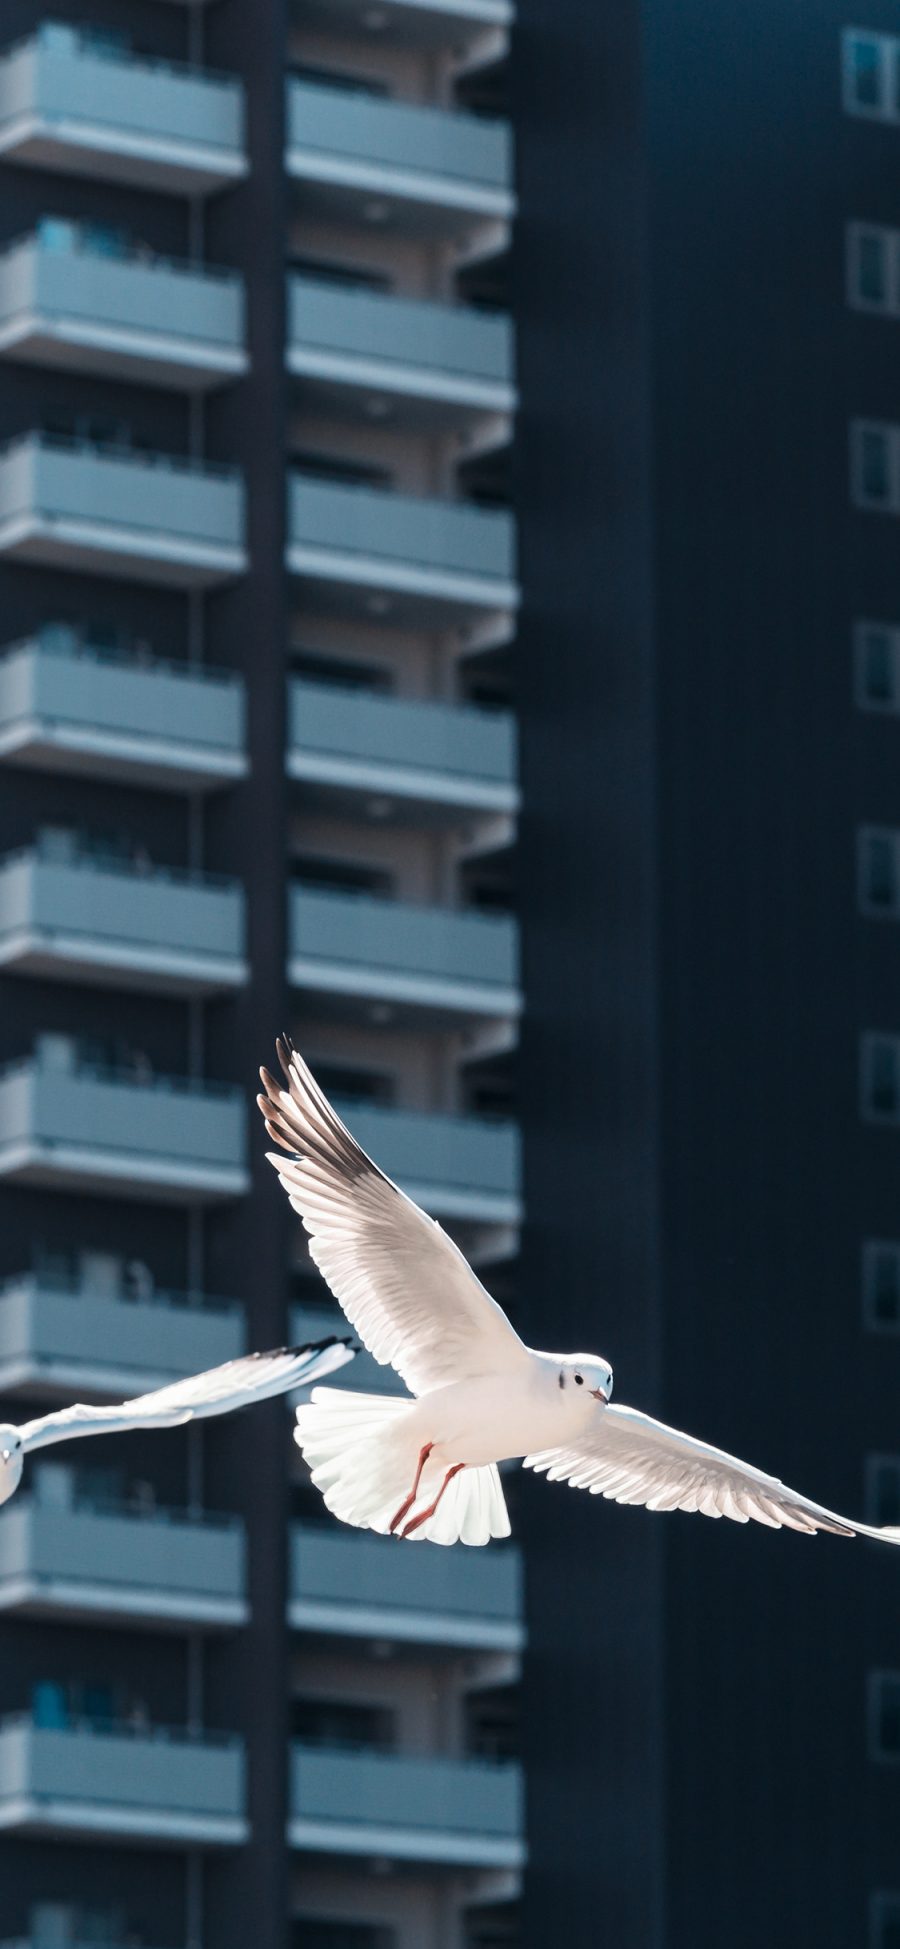 [2436×1125]海鸥 飞翔 翅膀 鸟 建筑 苹果手机壁纸图片